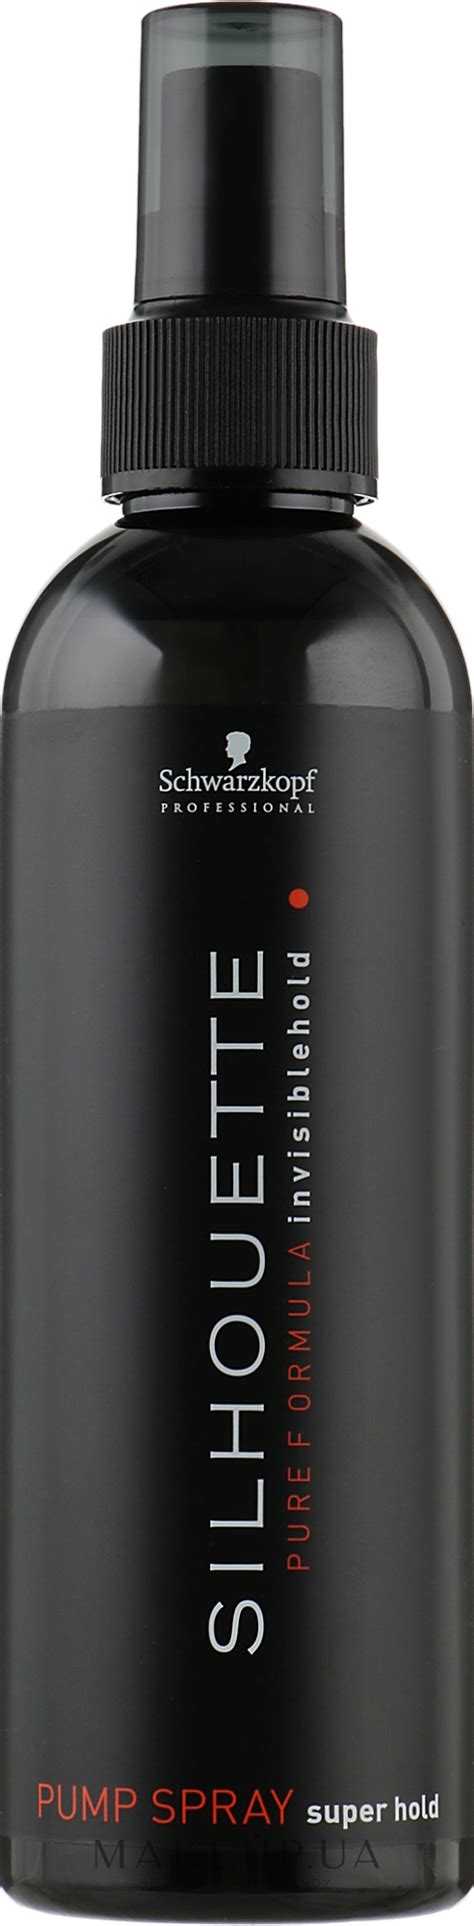 Schwarzkopf Professional Silhouette Pumpspray Super Hold